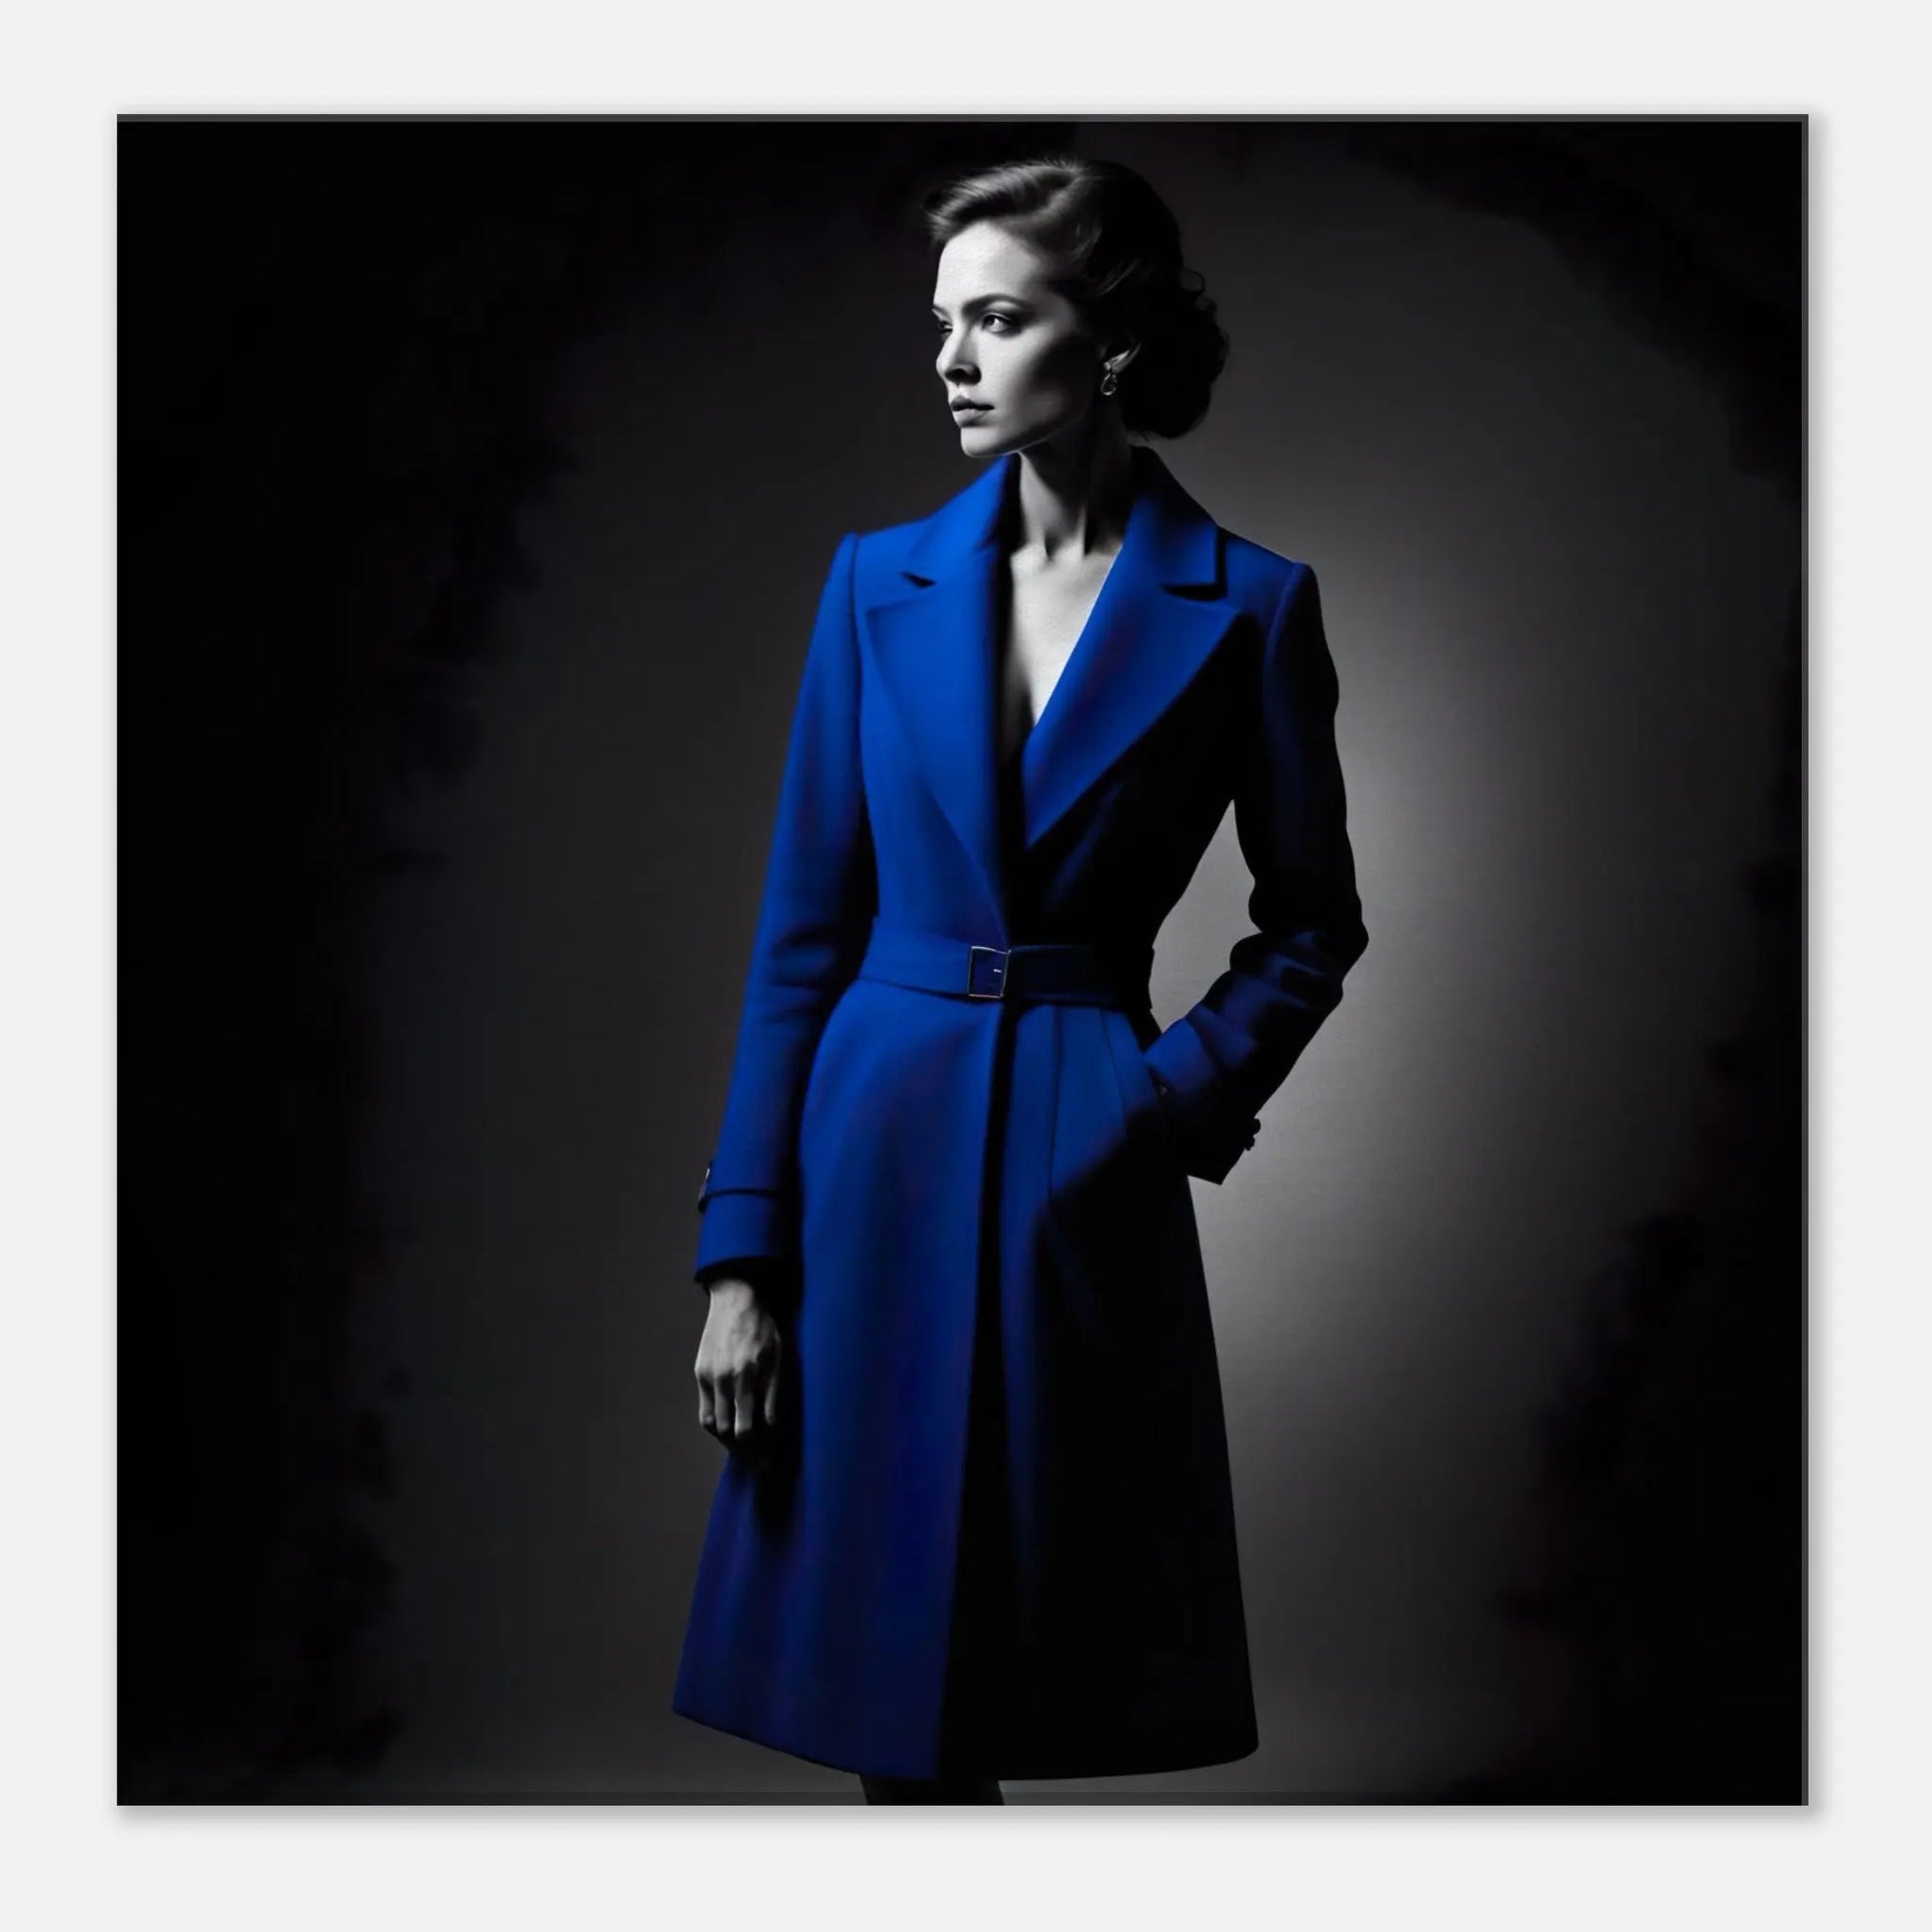 Leinwandbild - Frau im blauen Mantel - Schwarz-Weiß Stil, KI-Kunst - RolConArt, Schwarz-Weiß mit Akzentfarben, 40x40-cm-16x16